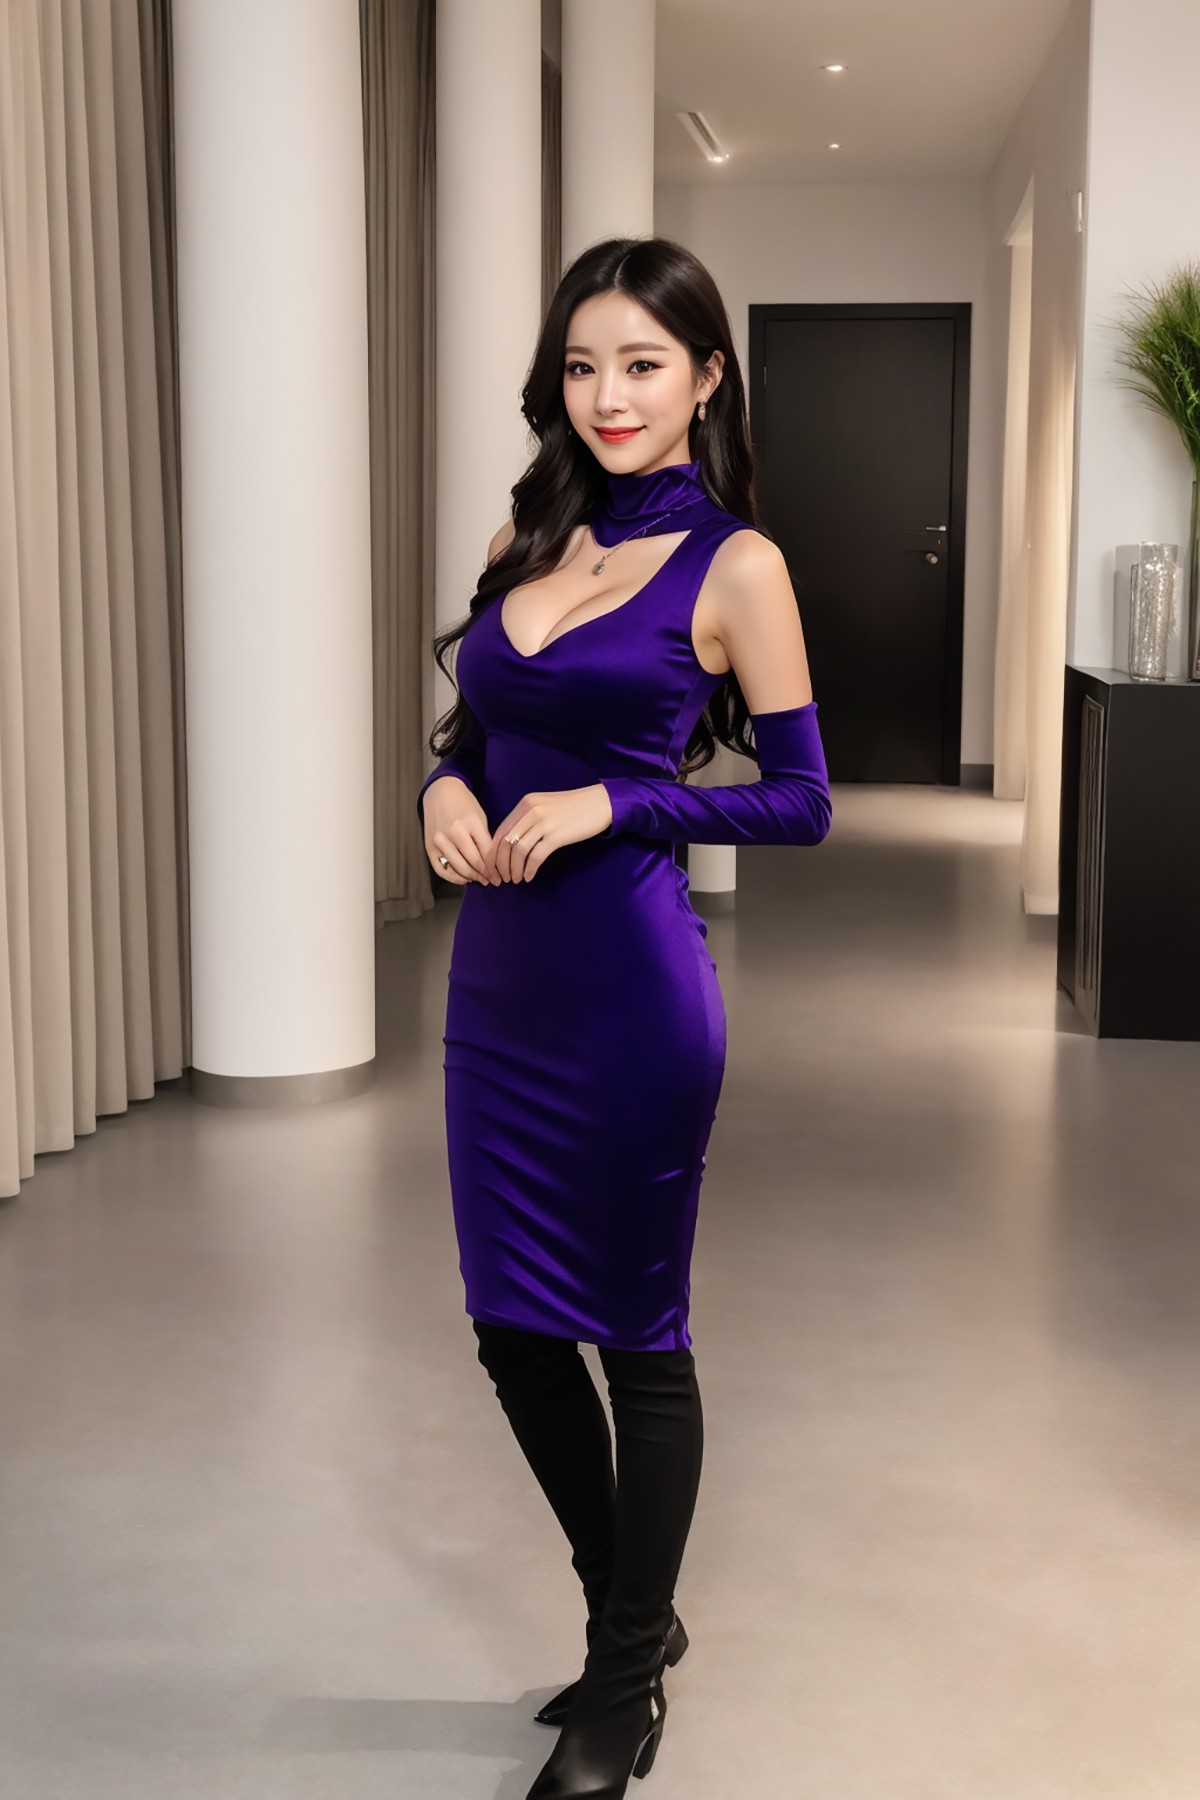 AIModel Vol 149 Purple Dress 0014 8723623478.jpg